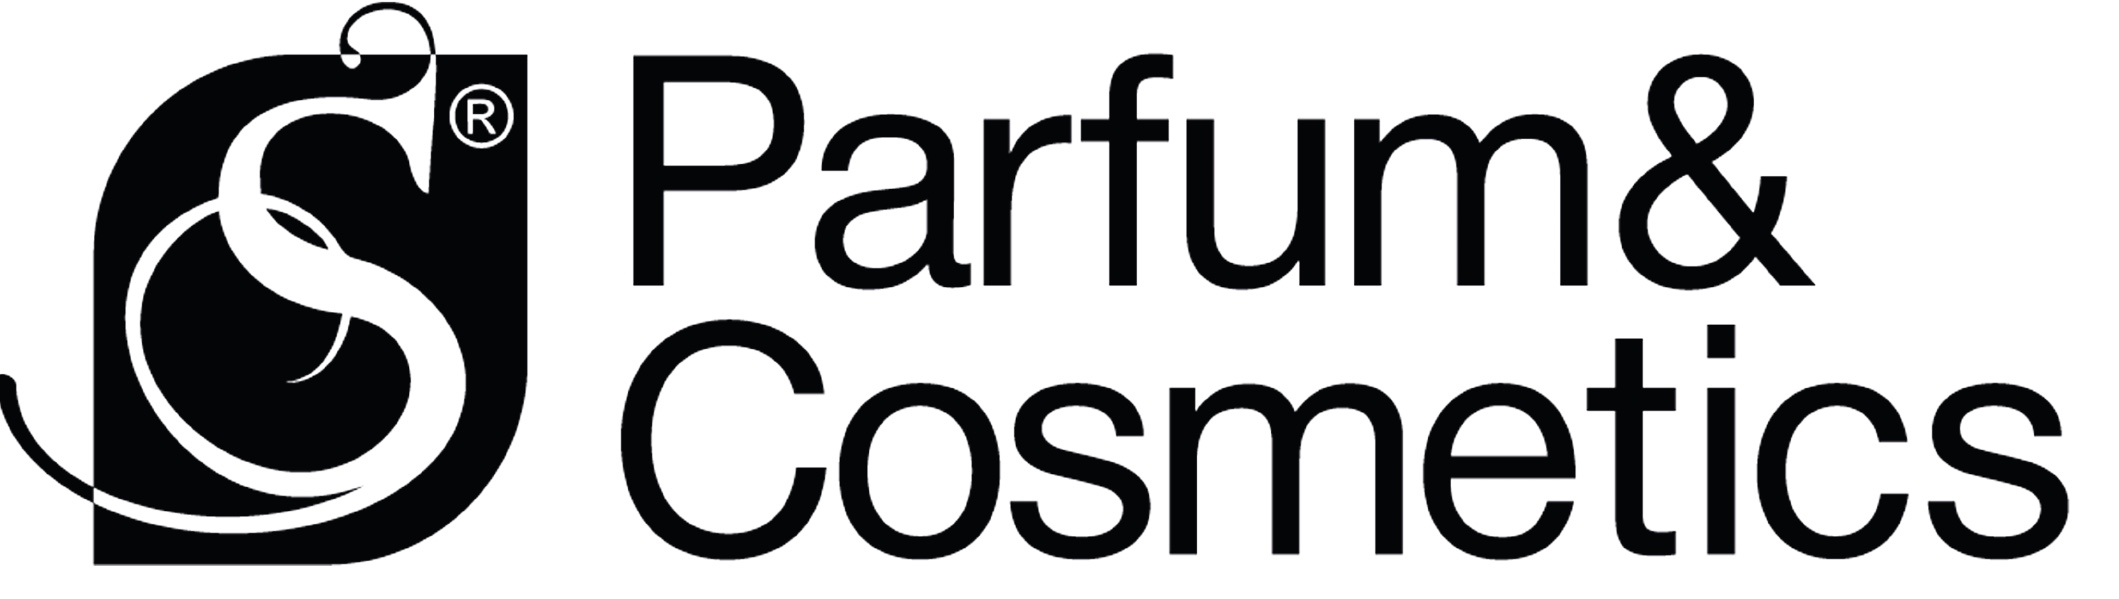 S Parfum: отзывы от сотрудников и партнеров